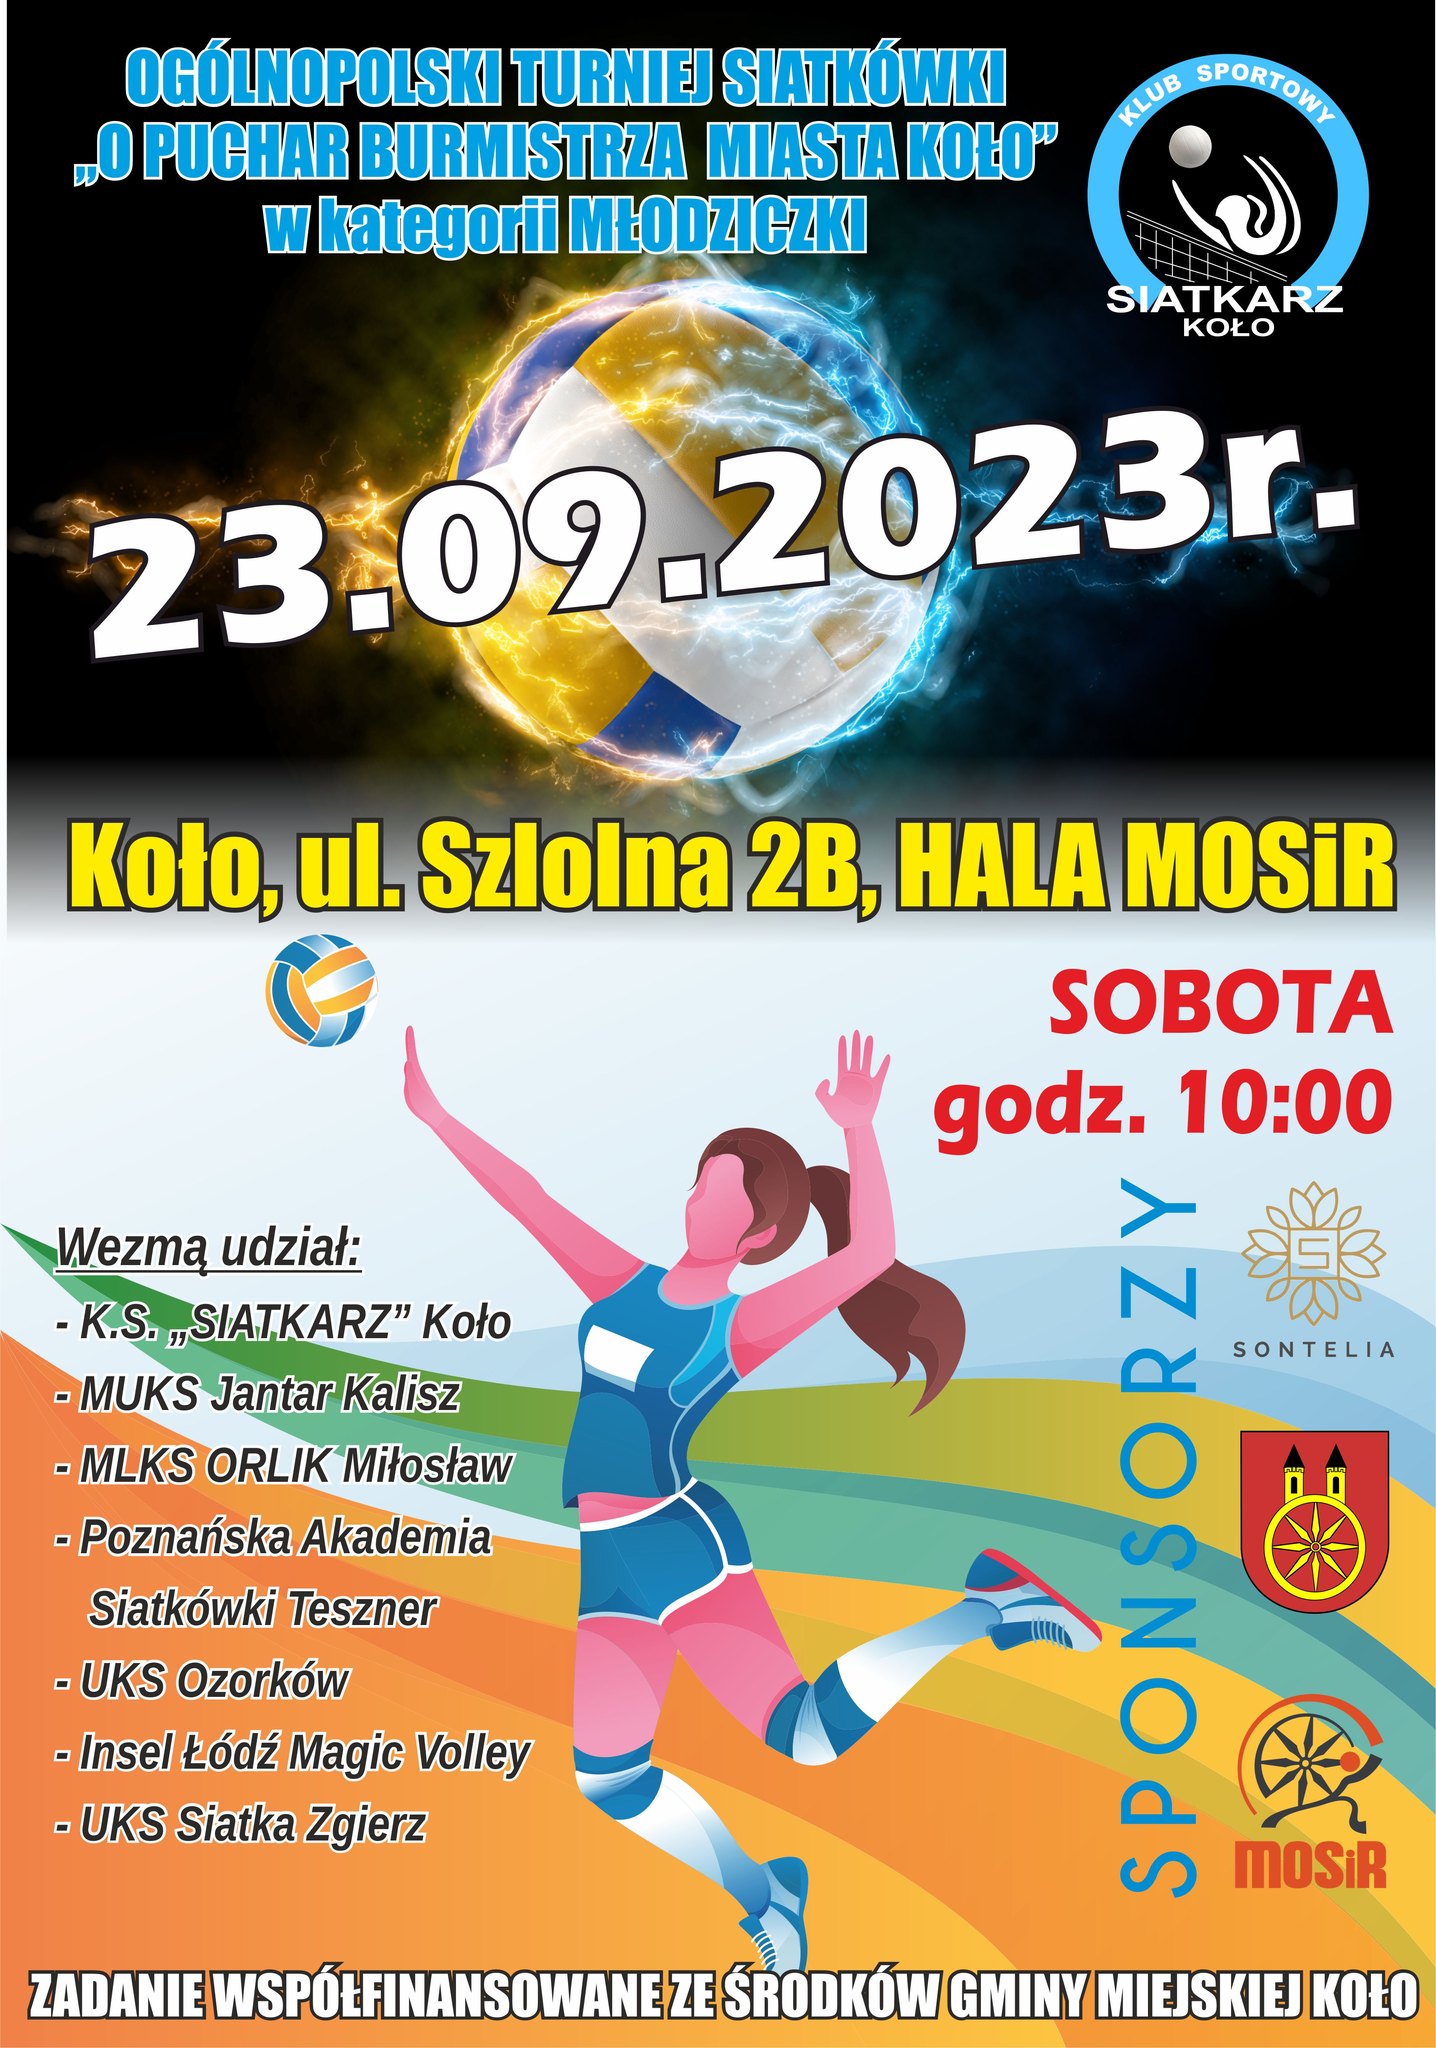 Plakat informujący o Ogólnopolski Turniej Siatkówki. Treść plakatu poniżej w artykule.